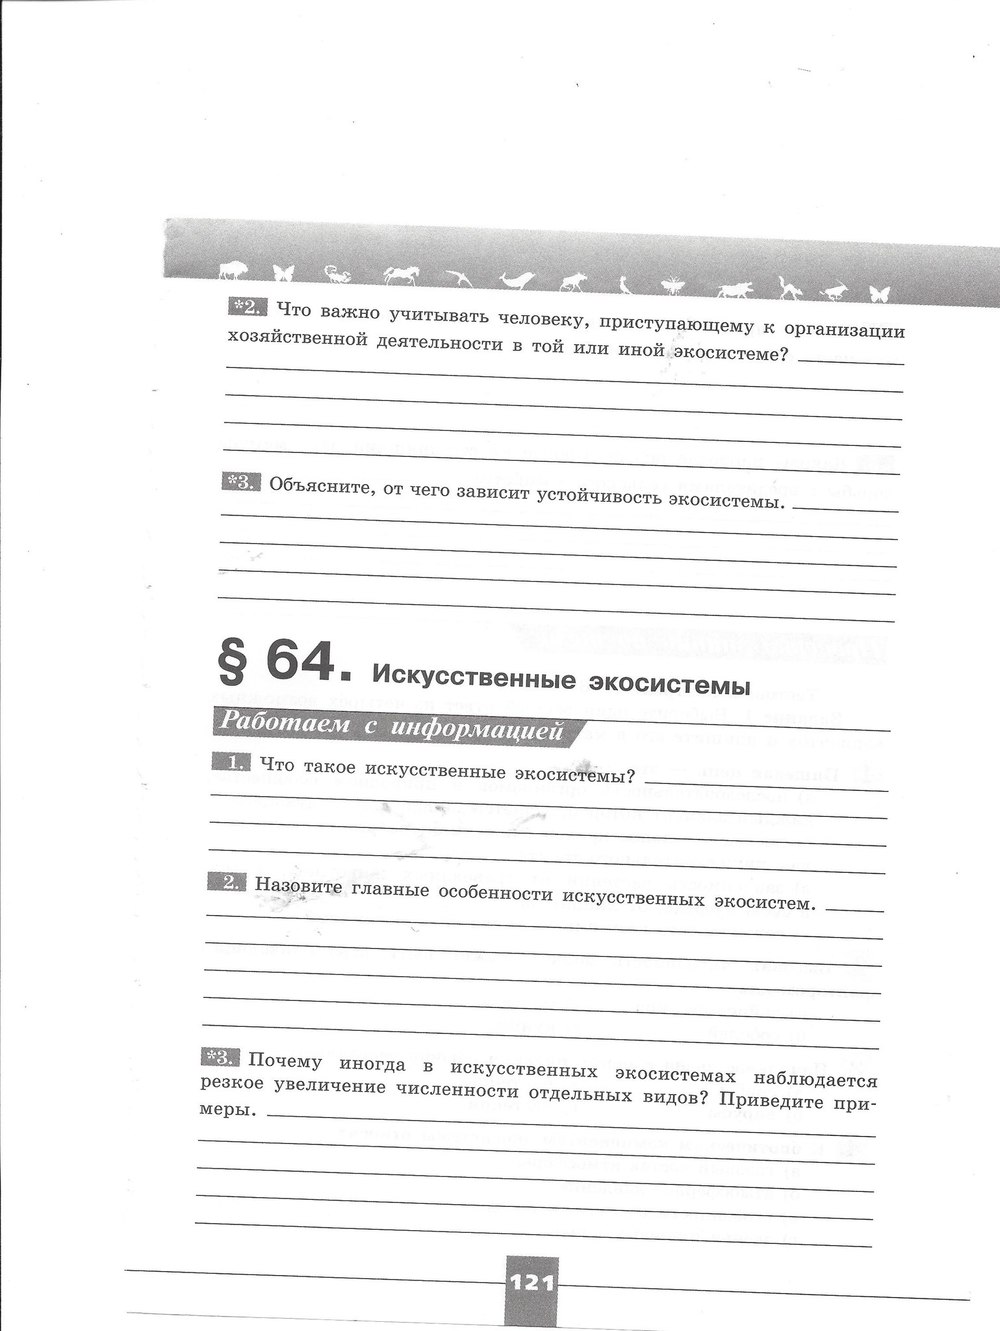 гдз 7 класс рабочая тетрадь страница 121 биология Пасечник, Швецов